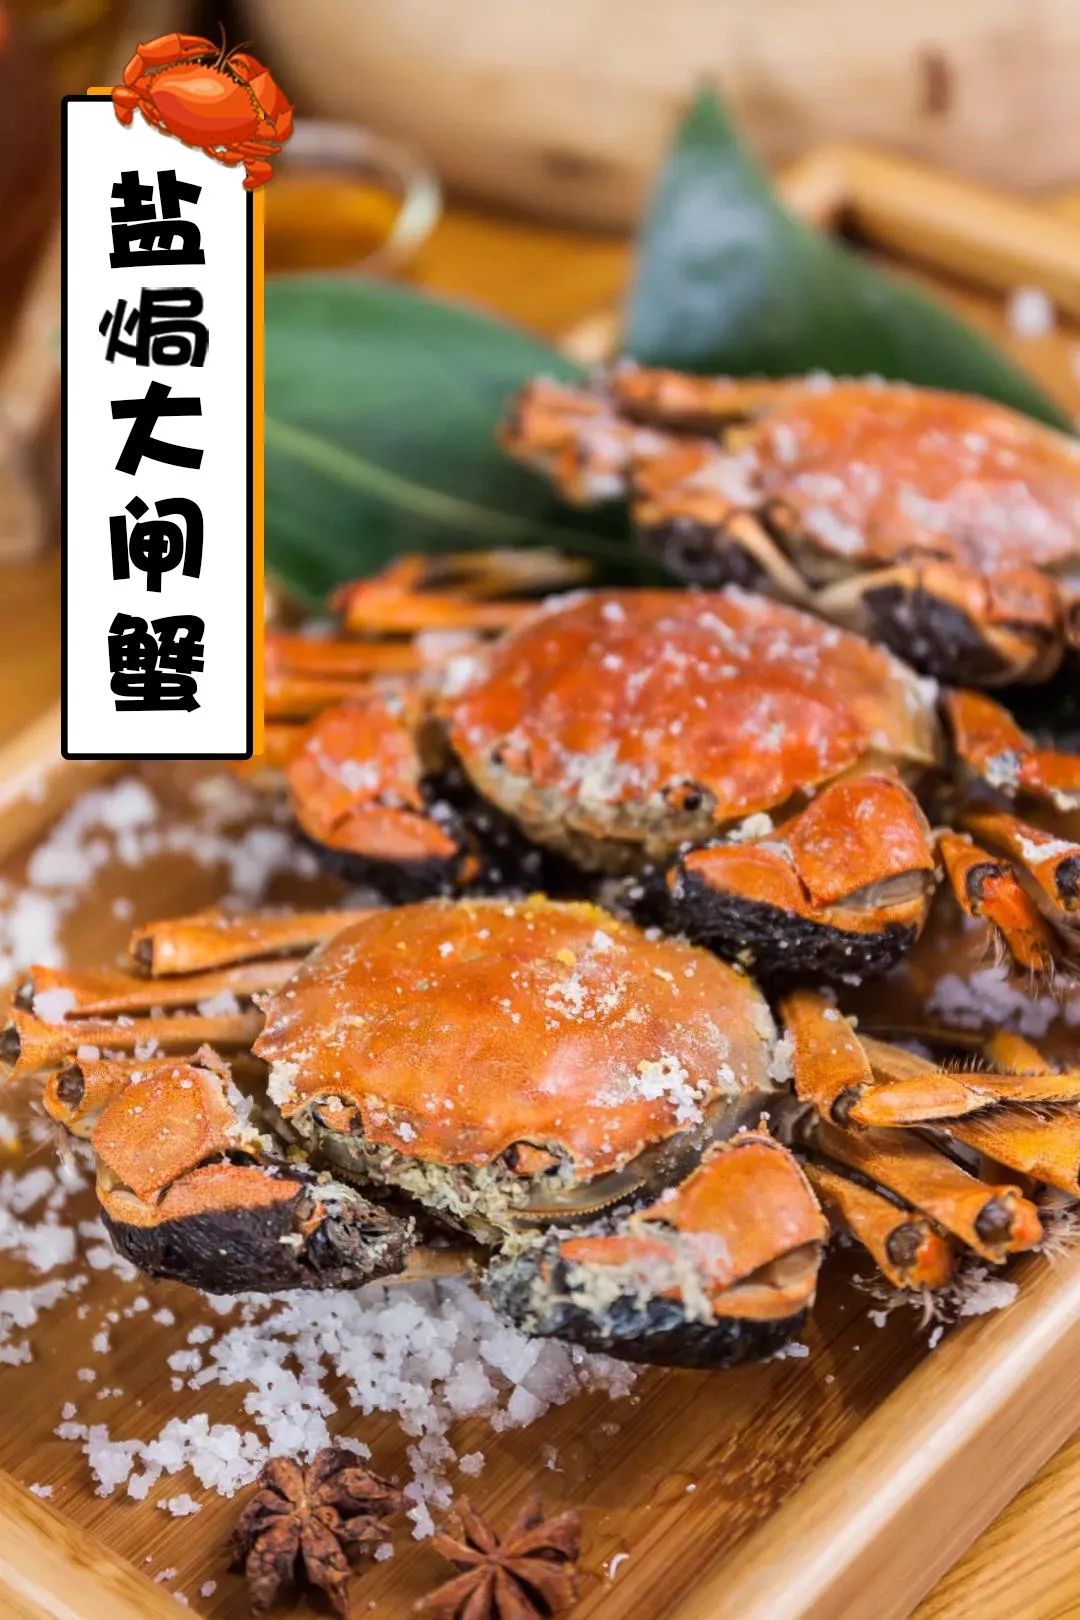 用盐焗的方法,将肉汁牢牢锁在壳内, 保持了大闸蟹原始的质感和鲜味.